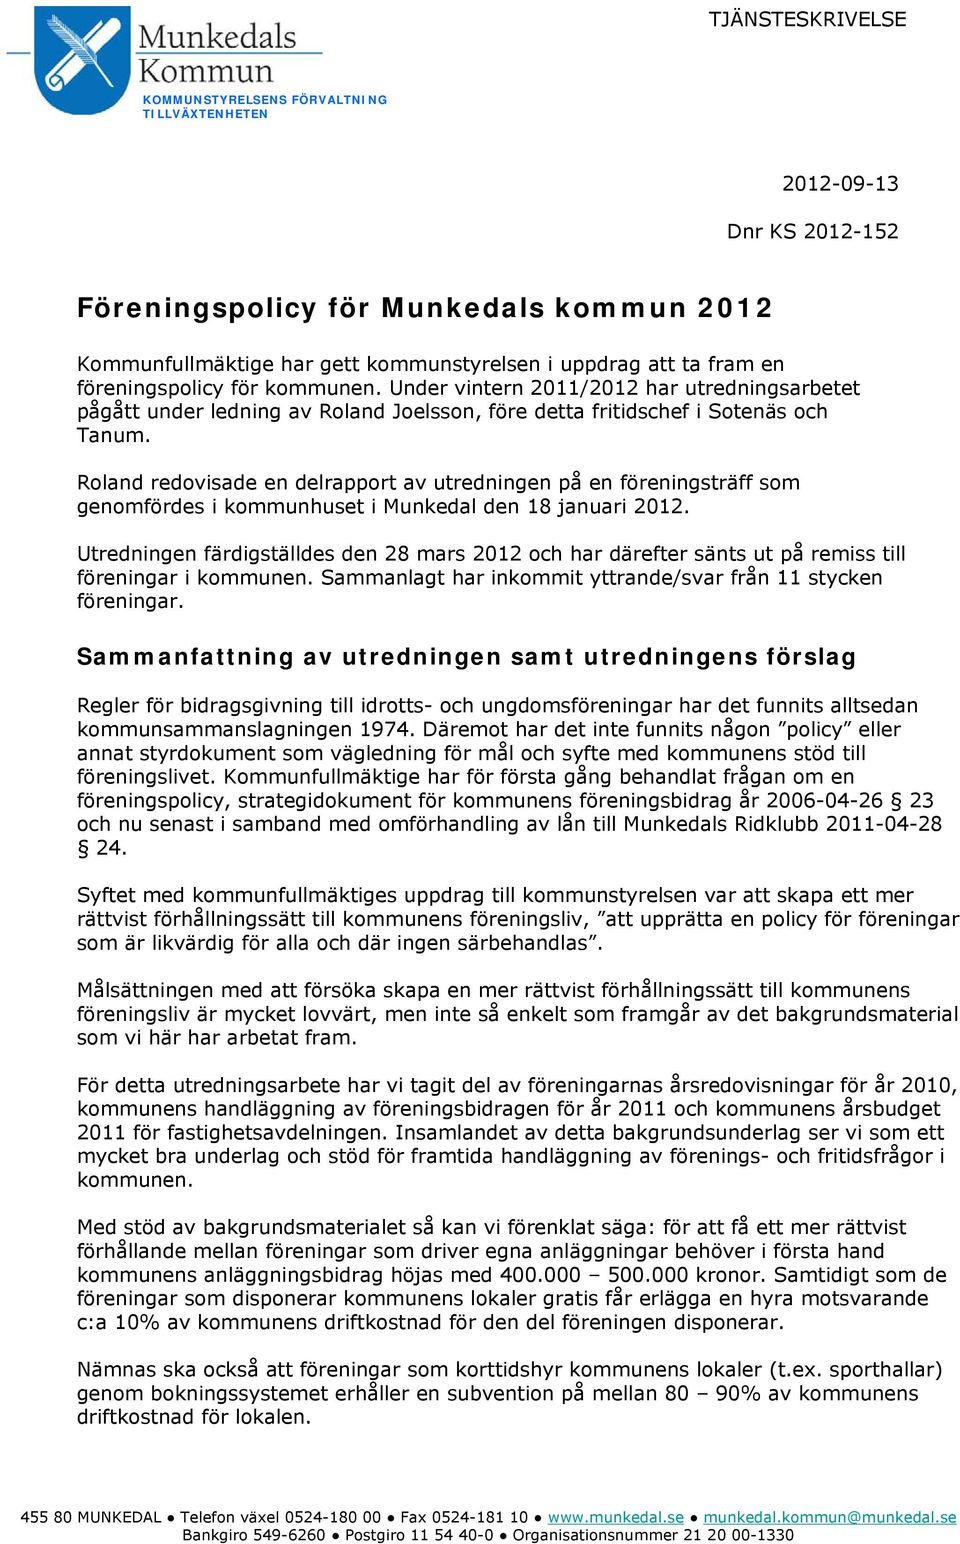 Roland redovisade en delrapport av utredningen på en föreningsträff som genomfördes i kommunhuset i Munkedal den 18 januari 2012.